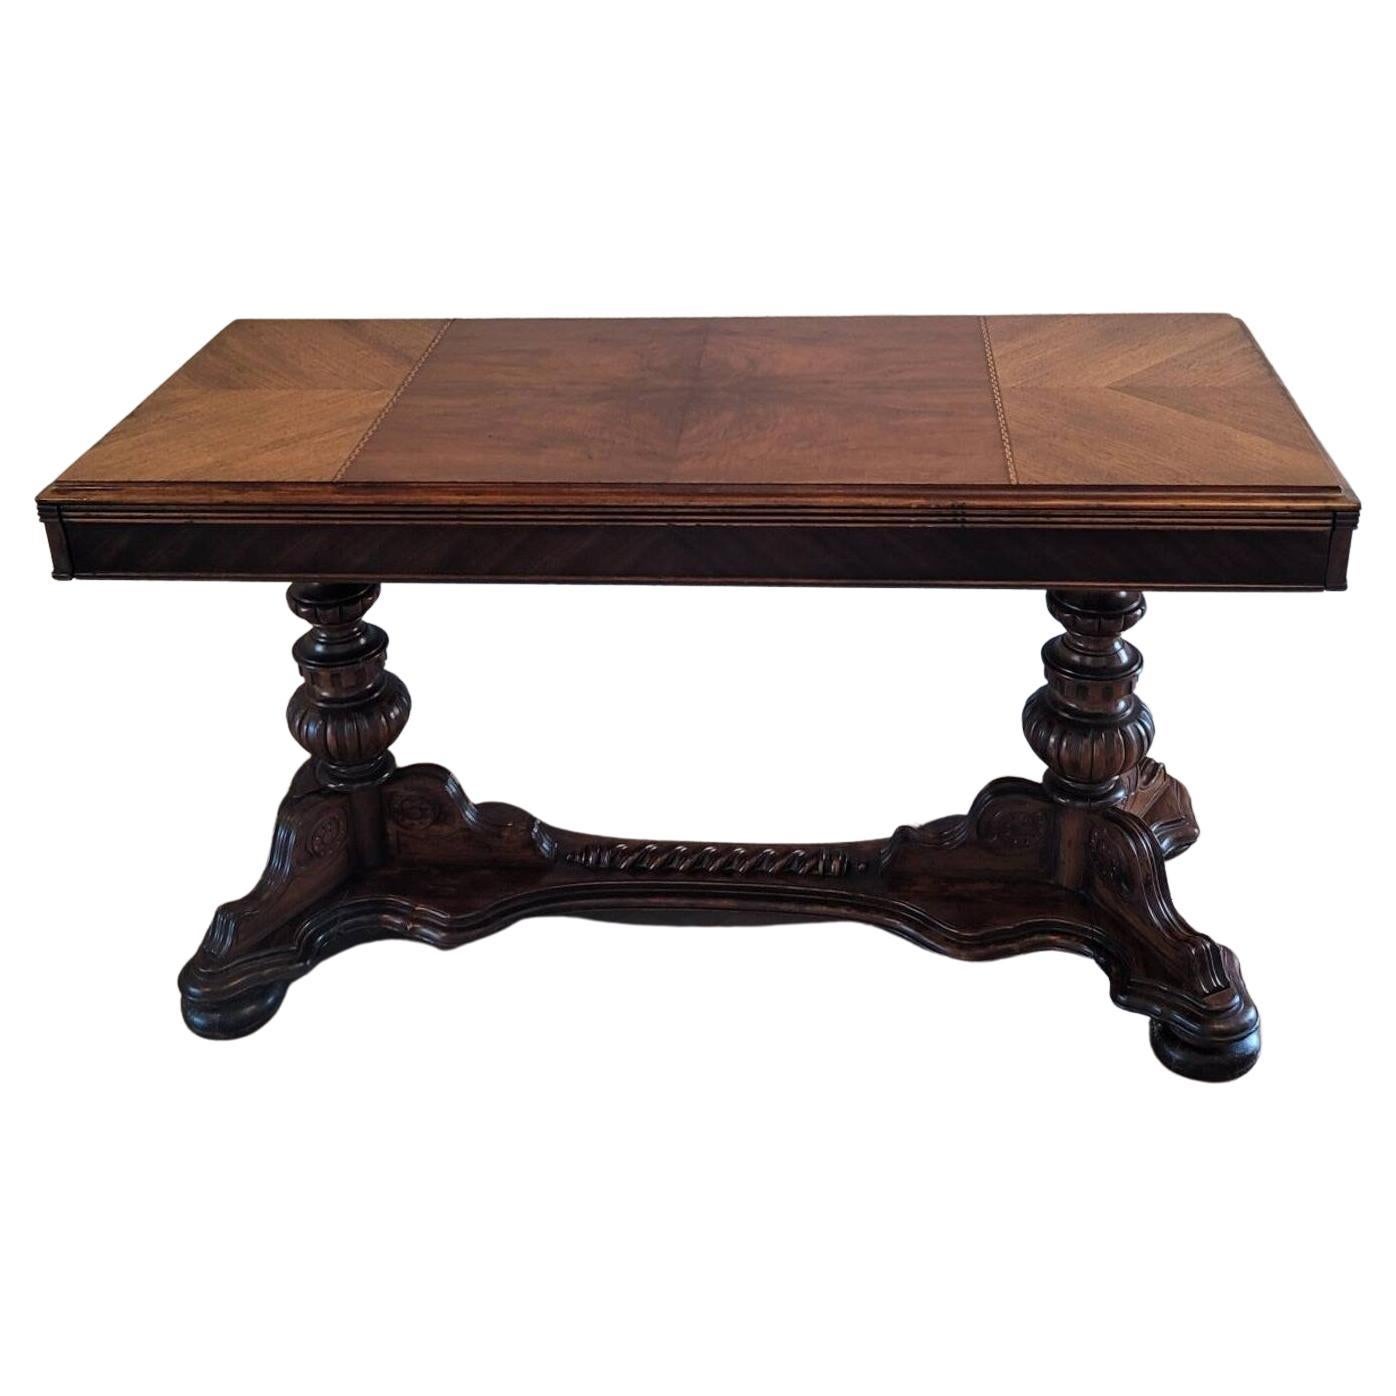 Rare table de bibliothèque à rallonge ancienne de la Renaissance américaine, signée